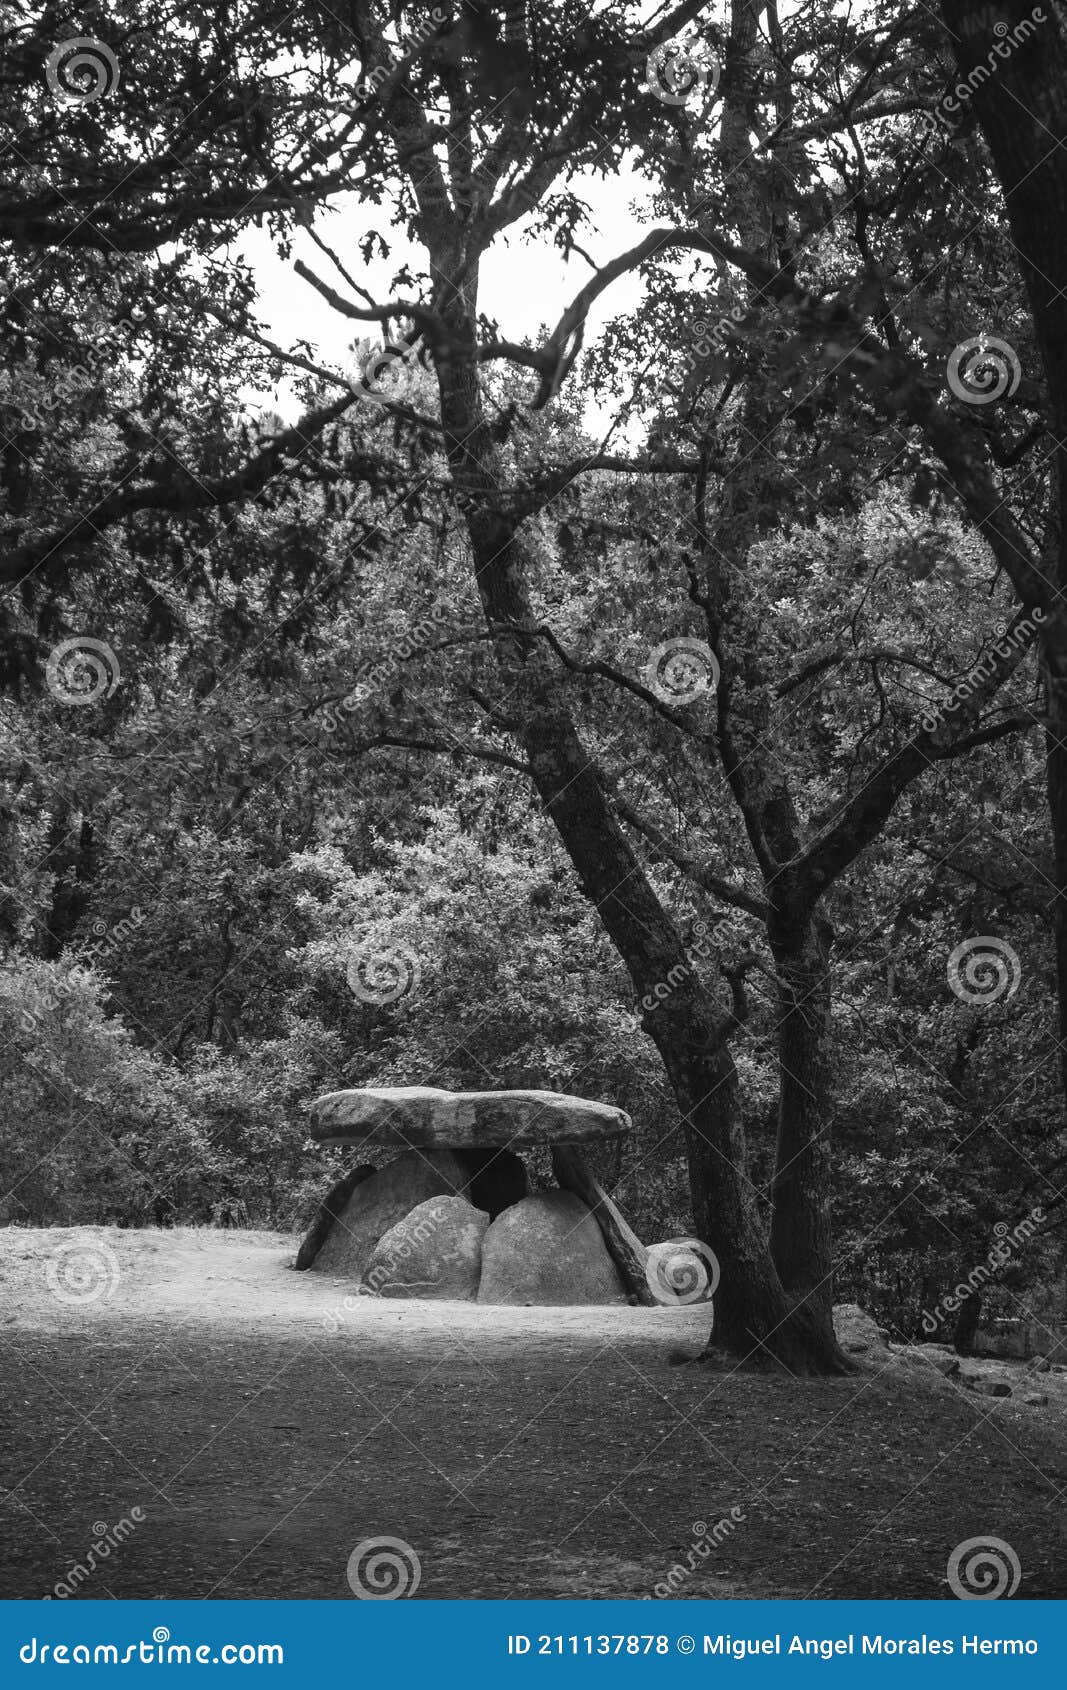 axeitos dolmen, a prehistoric megalithic construction